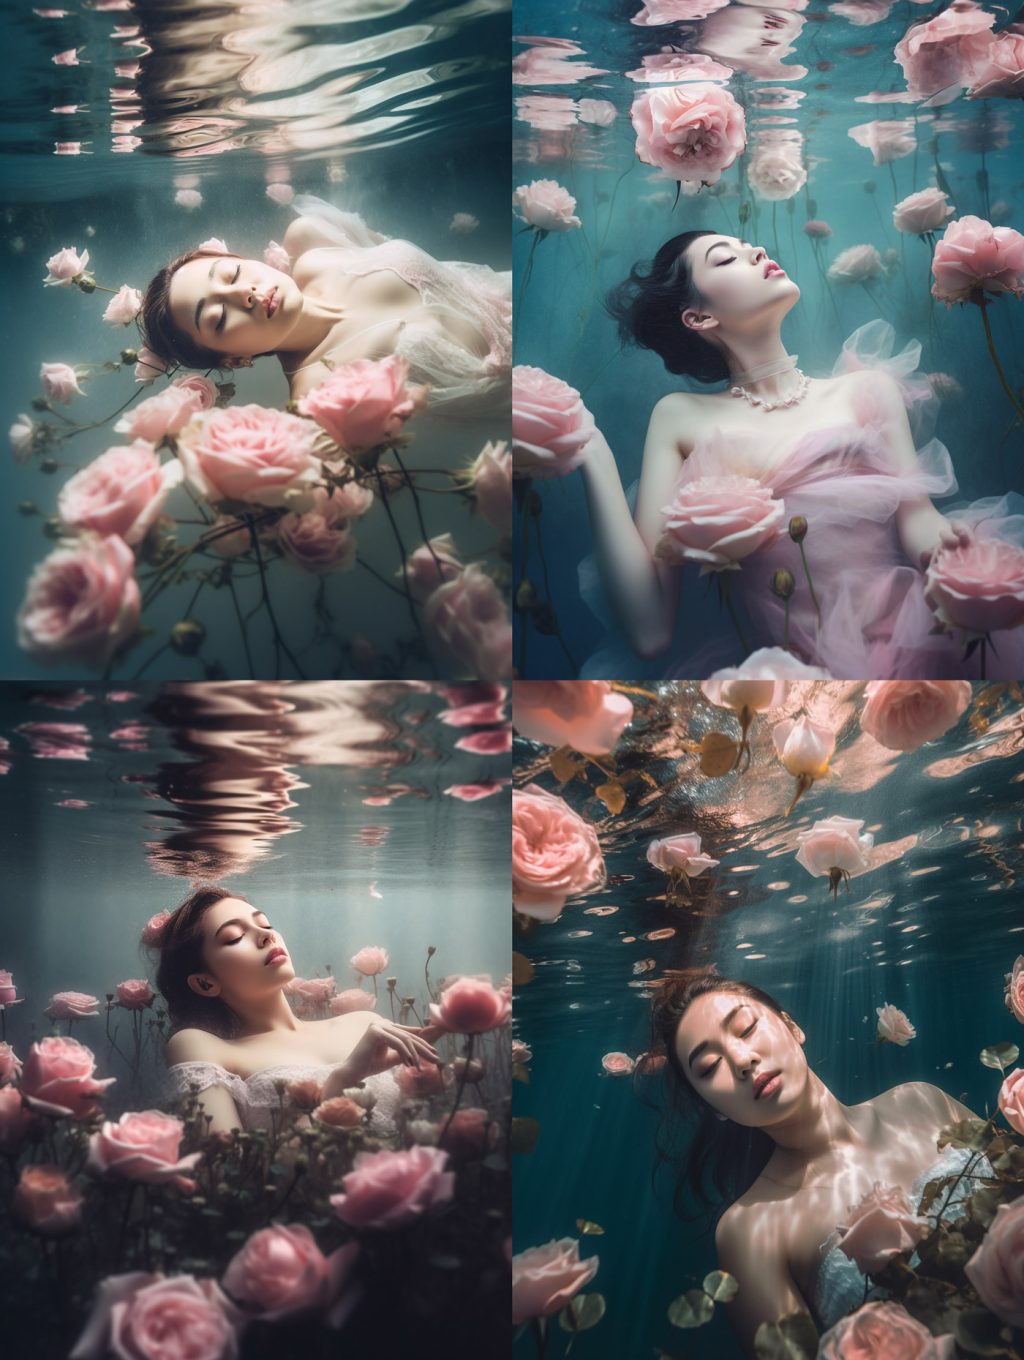 水中摄影鲜花玫瑰美女艺术浪漫写真midjourney关键词